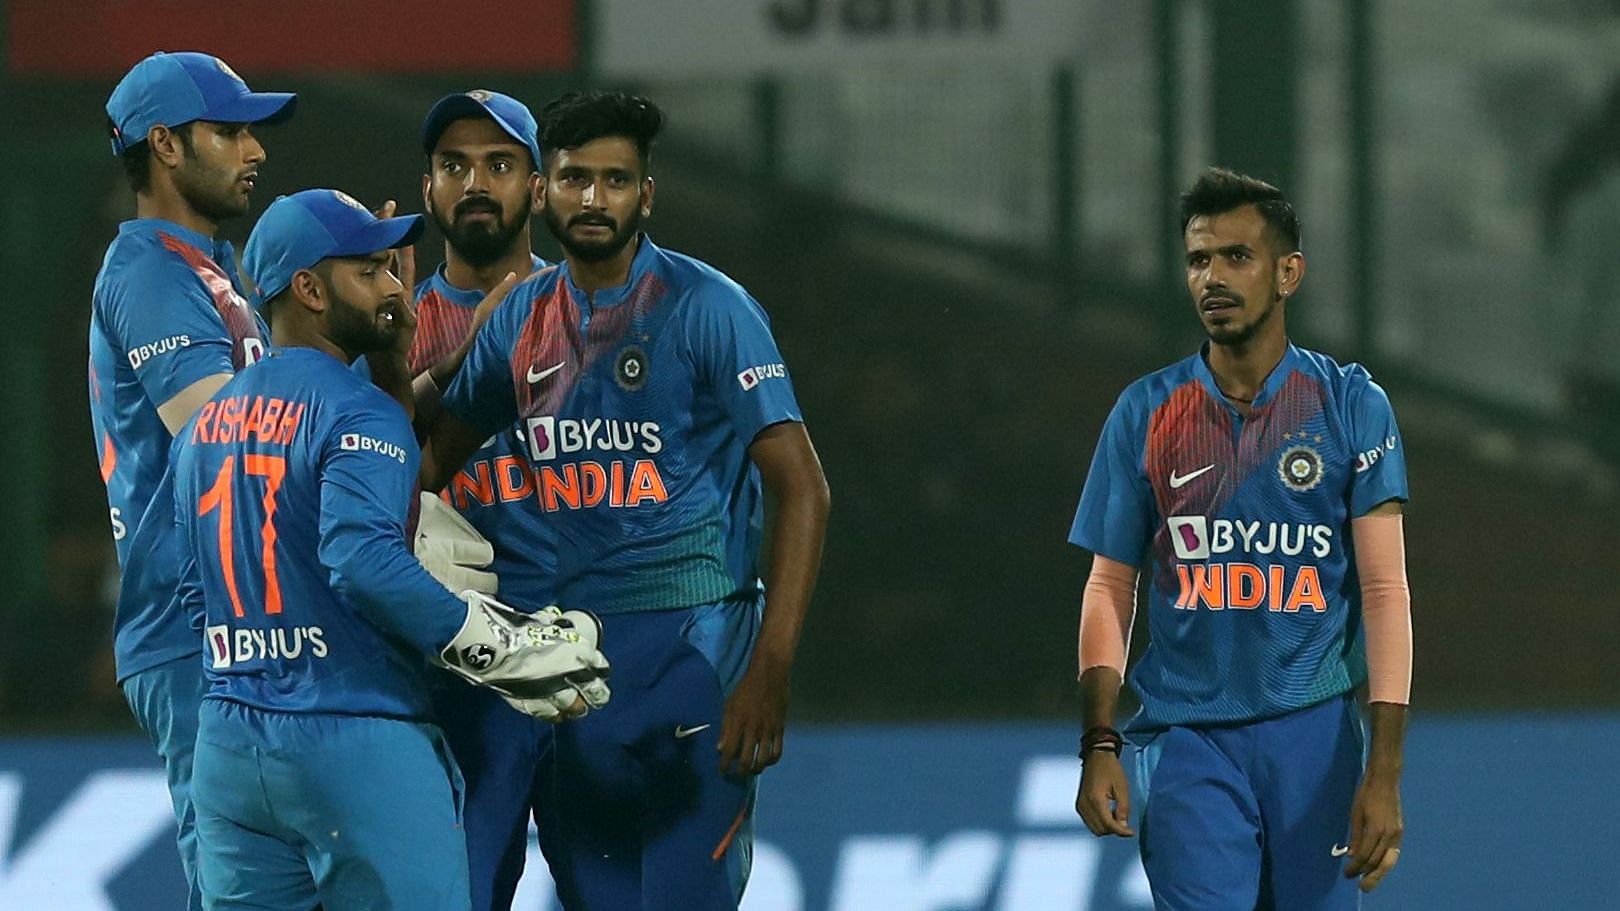 India vs Bangladesh Delhi T20I: Latest score updates from India’s first T20 International at Delhi.